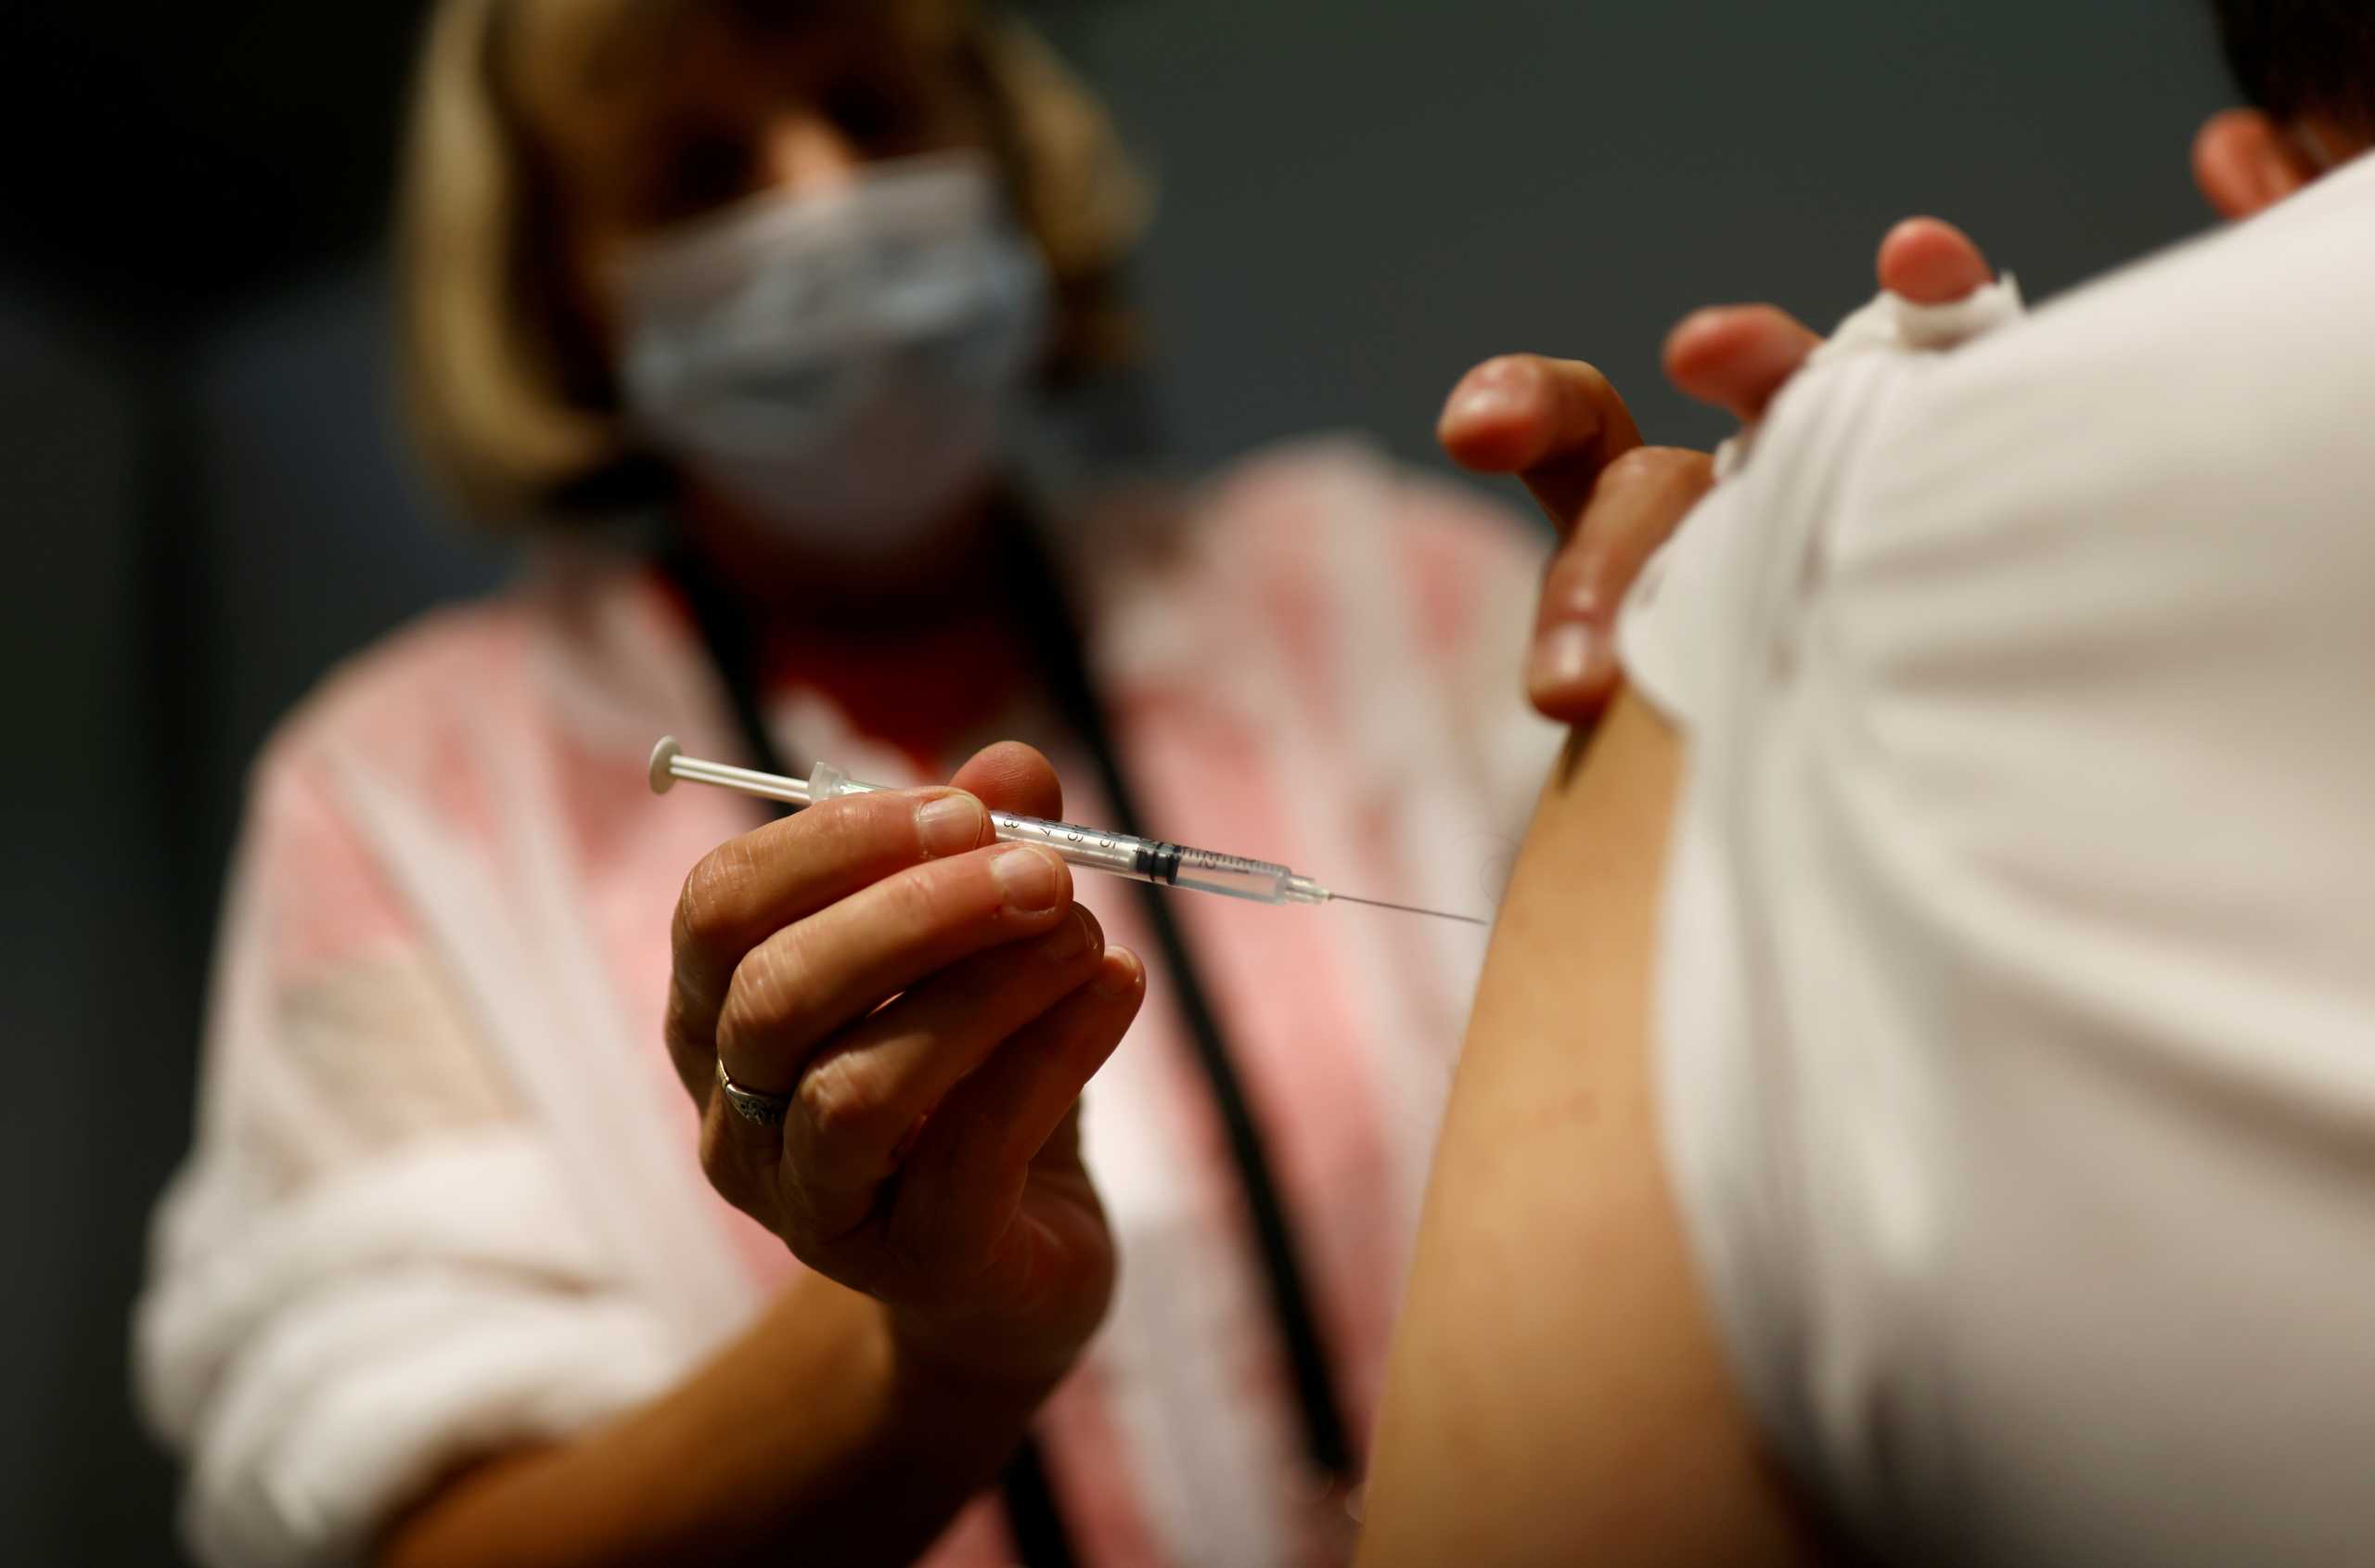 Κορονοϊός – Παγώνη: Τριπλά εμβολιασμένοι που νόσησαν μπορεί να ξανακολλήσουν